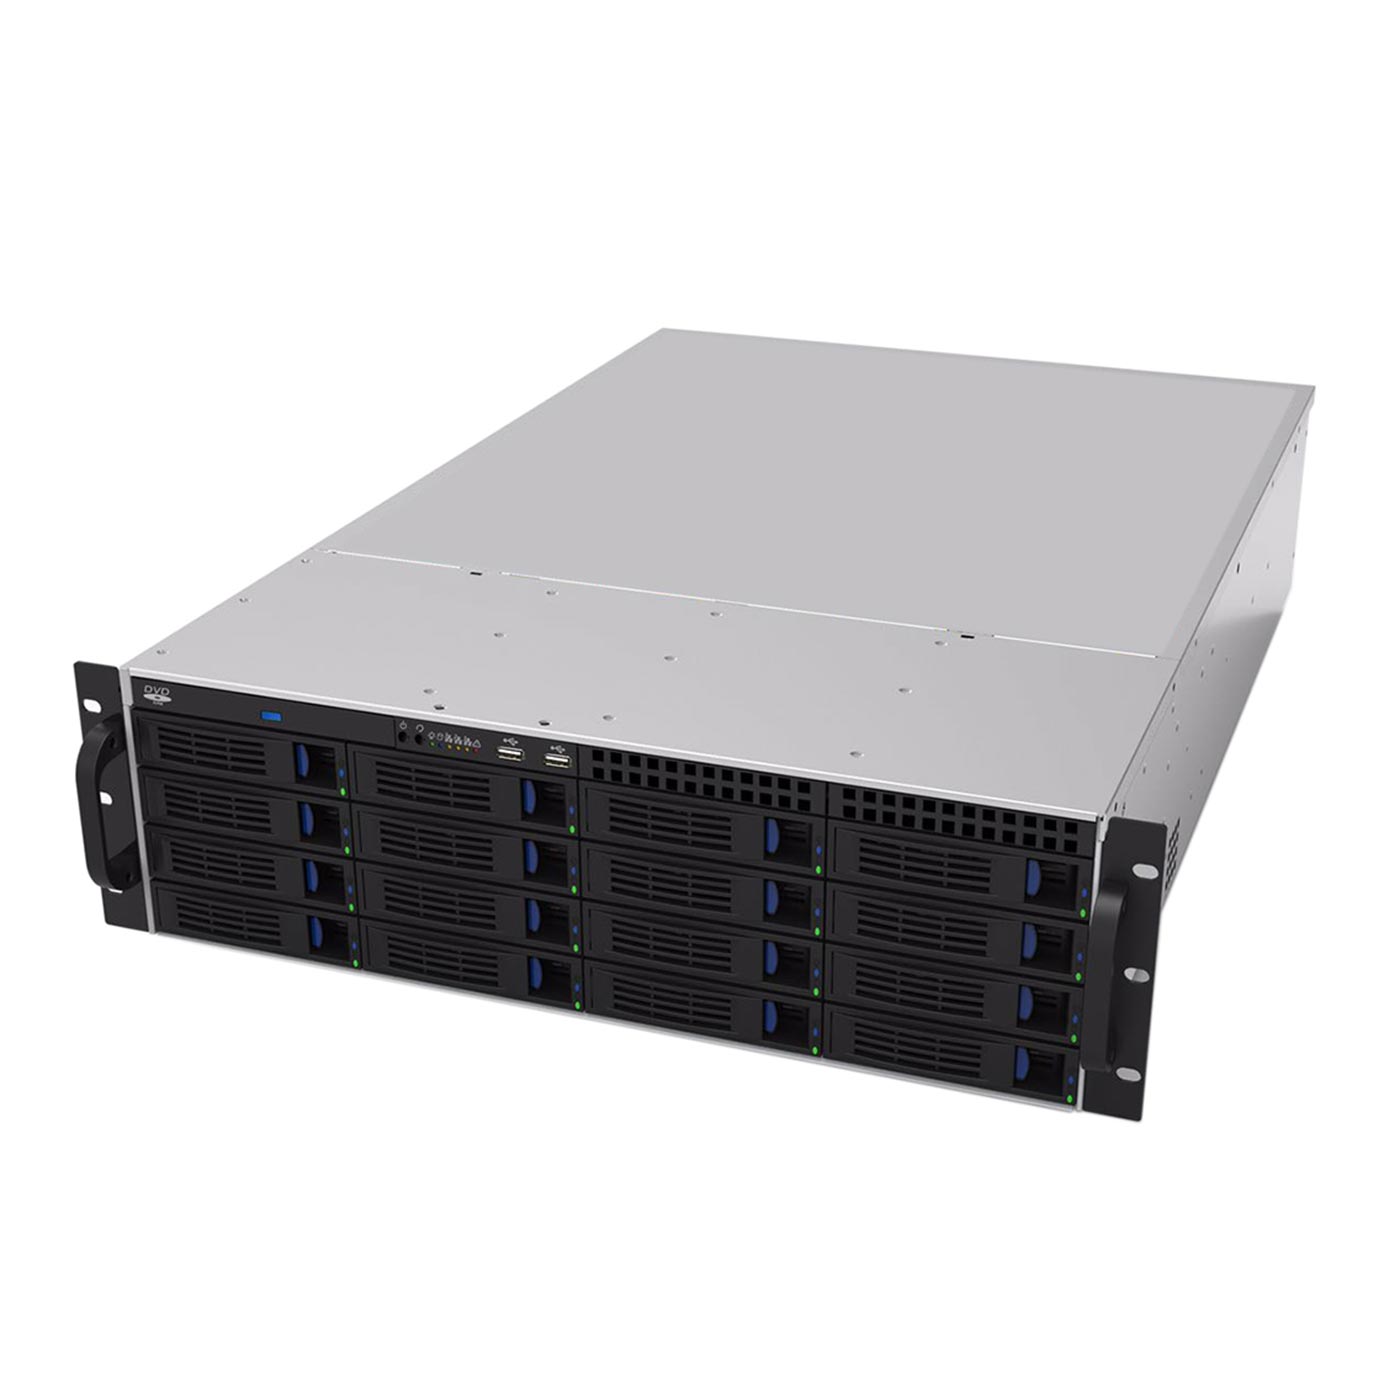 Серверный корпус 3U NR-R316 БП 850Вт 16xHot Swap SAS/SATA (EATX 12x13, Slim CD, 650mm) черный